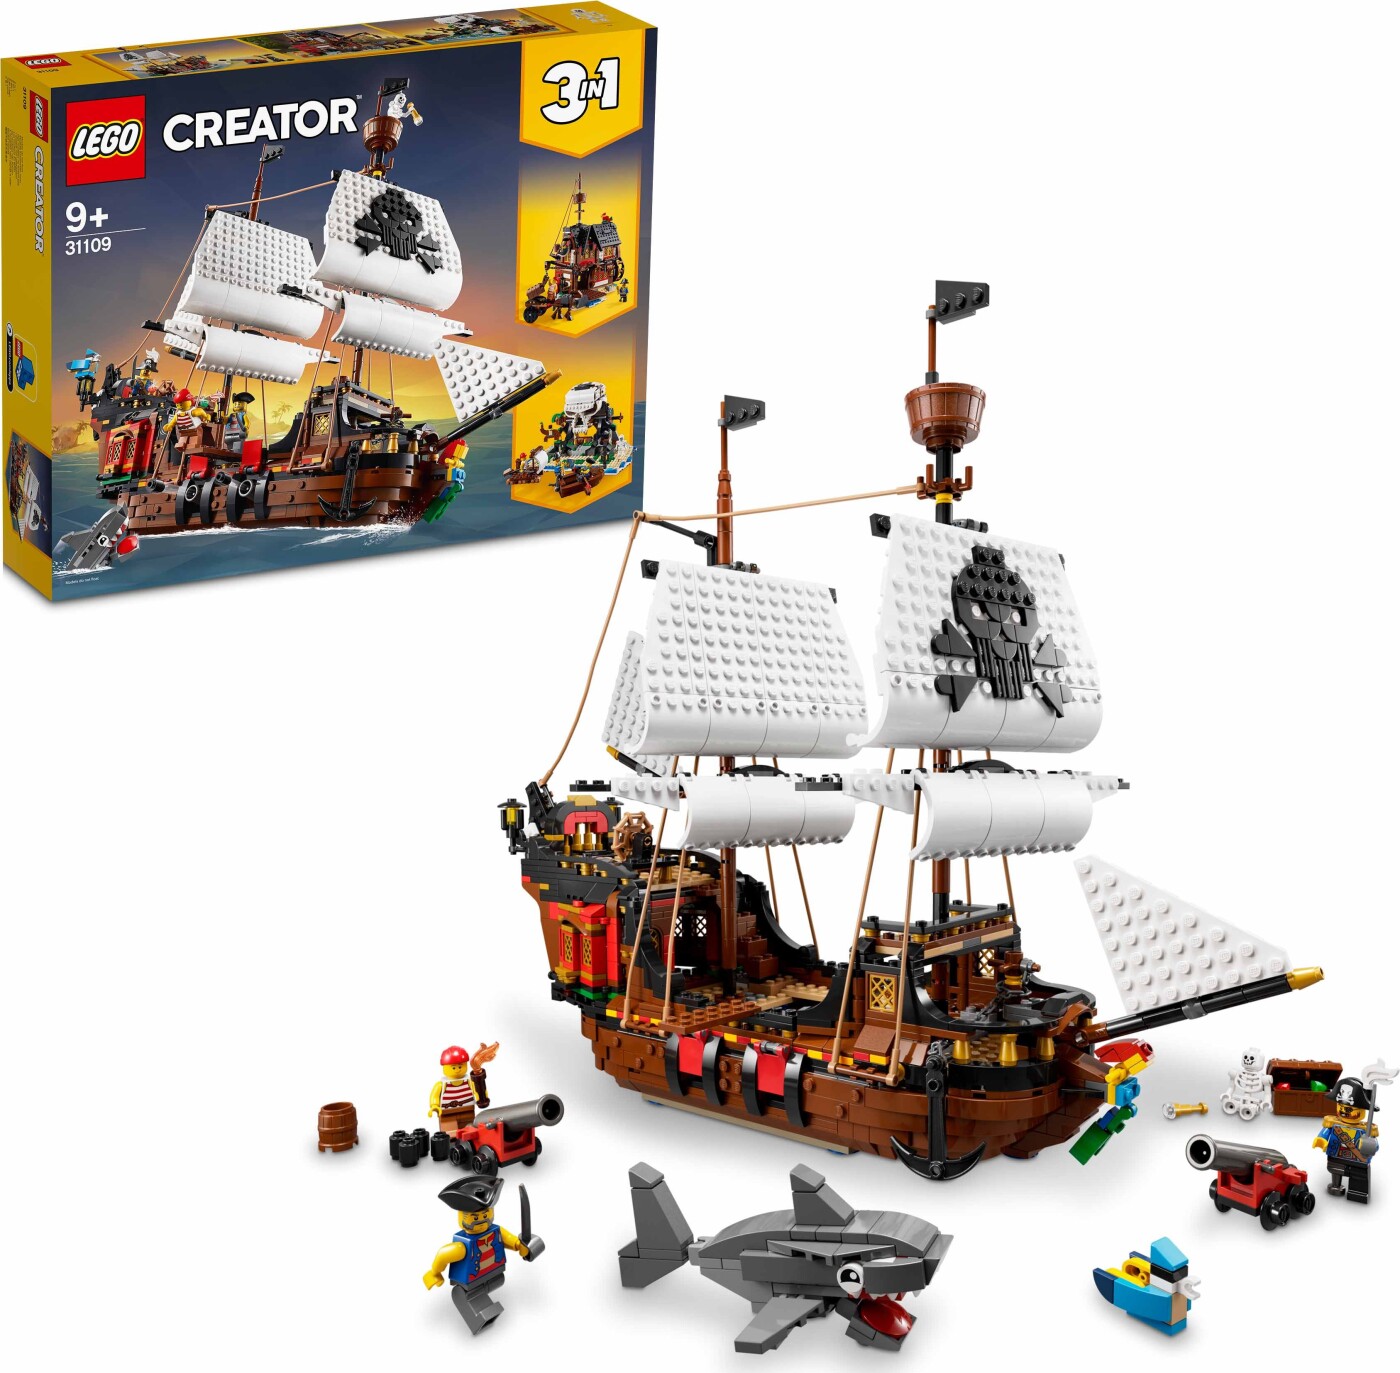 Billede af Lego Creator 3-in-1 - Piratskib - 31109 hos Gucca.dk